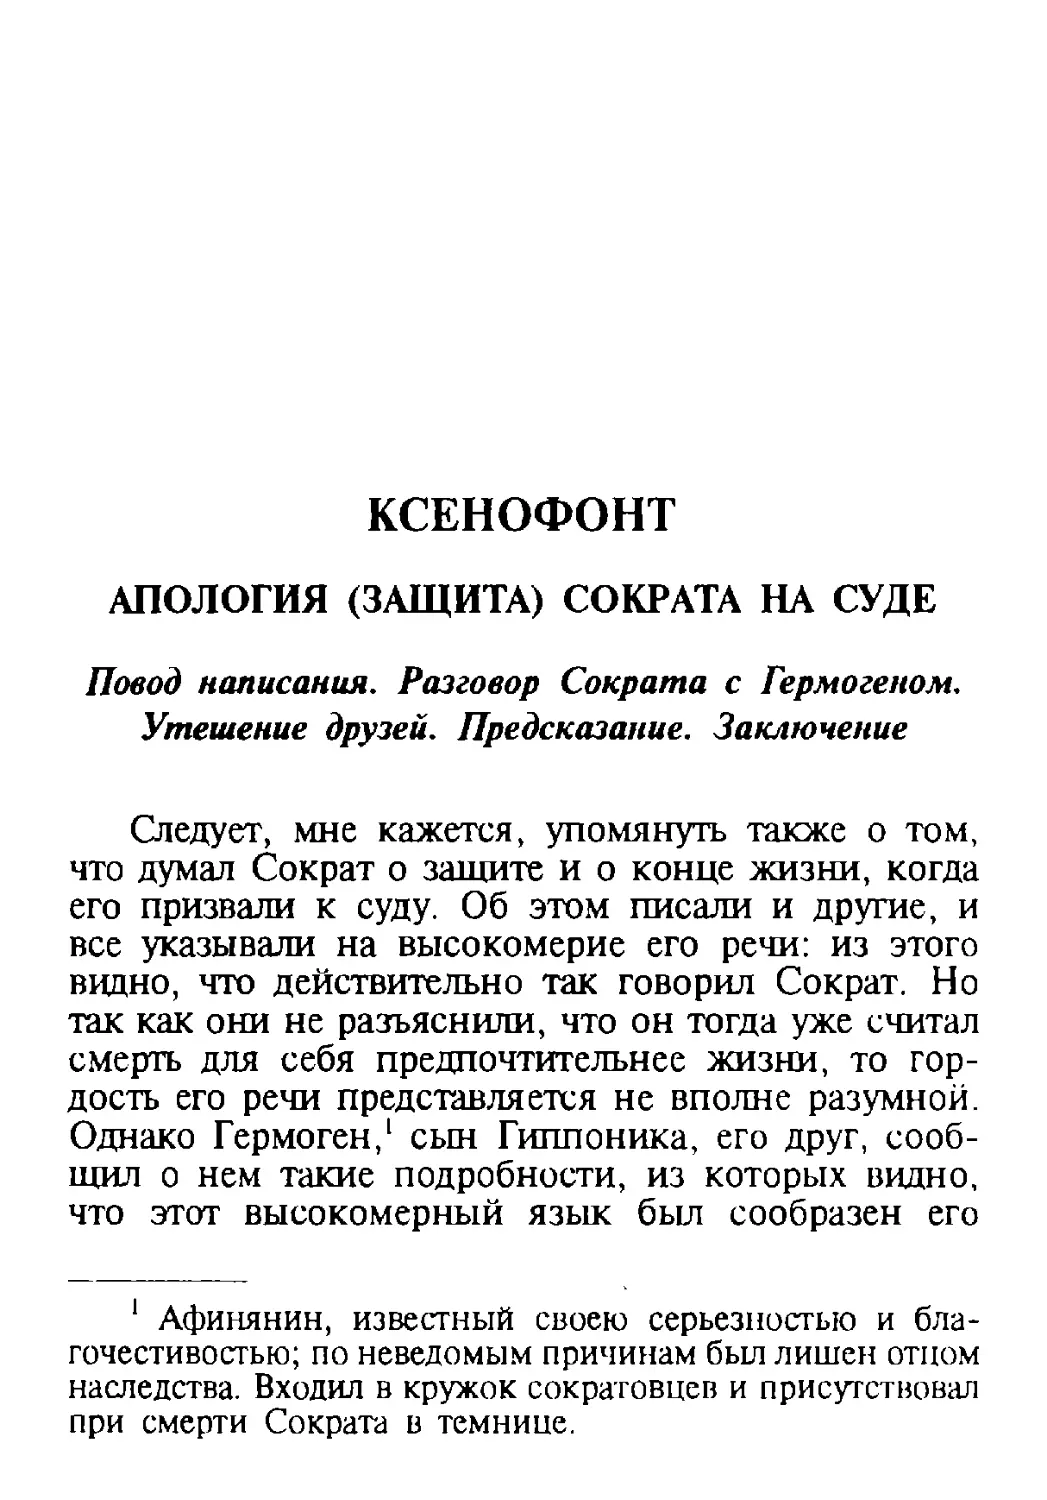 Ксенофонт – Апология (защита) Сократа на суде